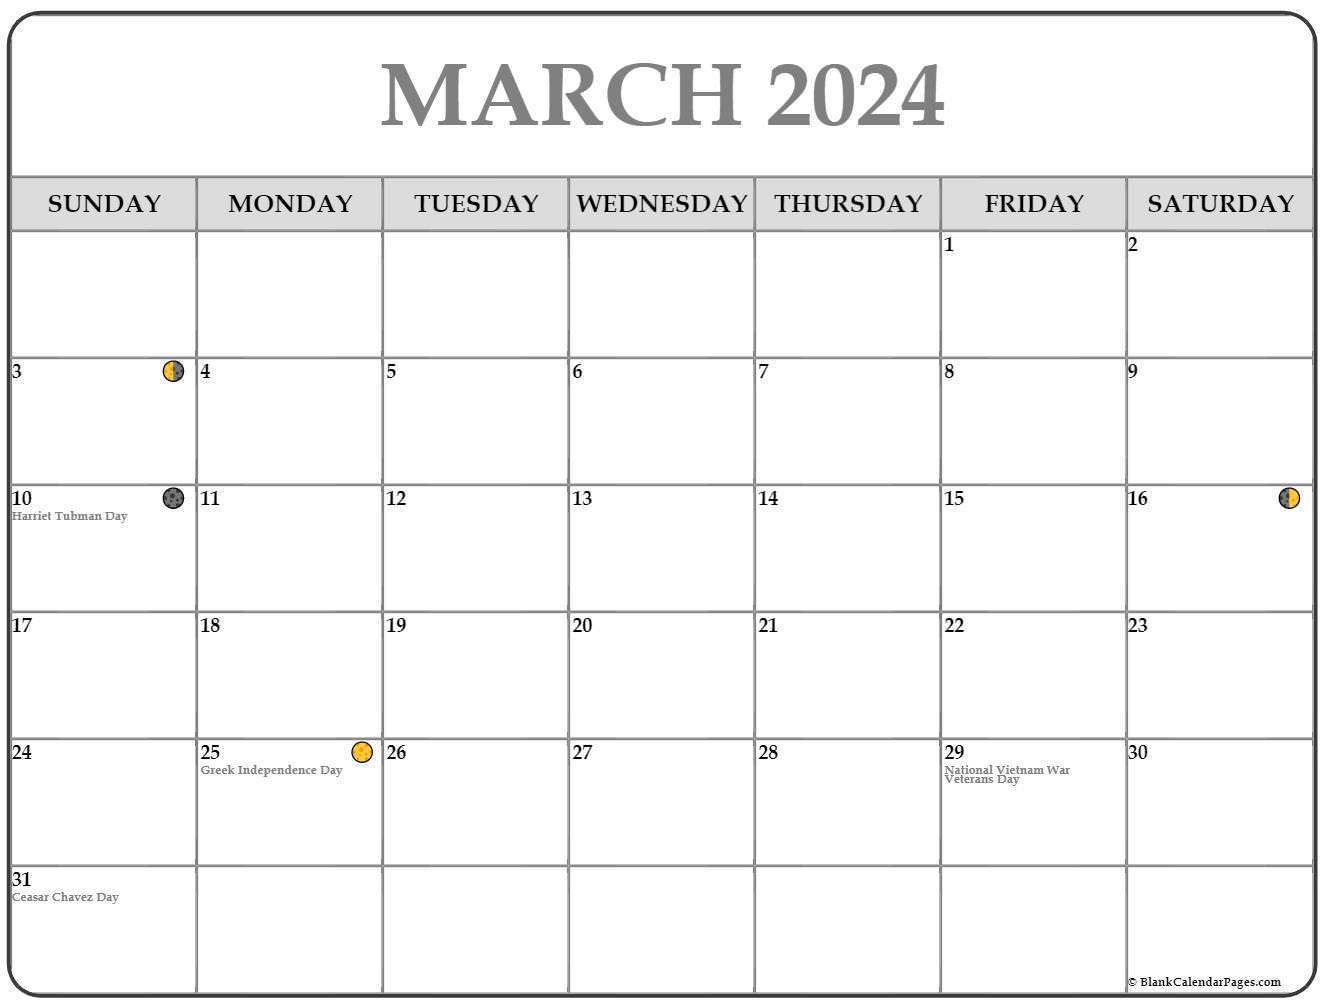 Moon Calendar March 2024 Calendar 2024 All Holidays